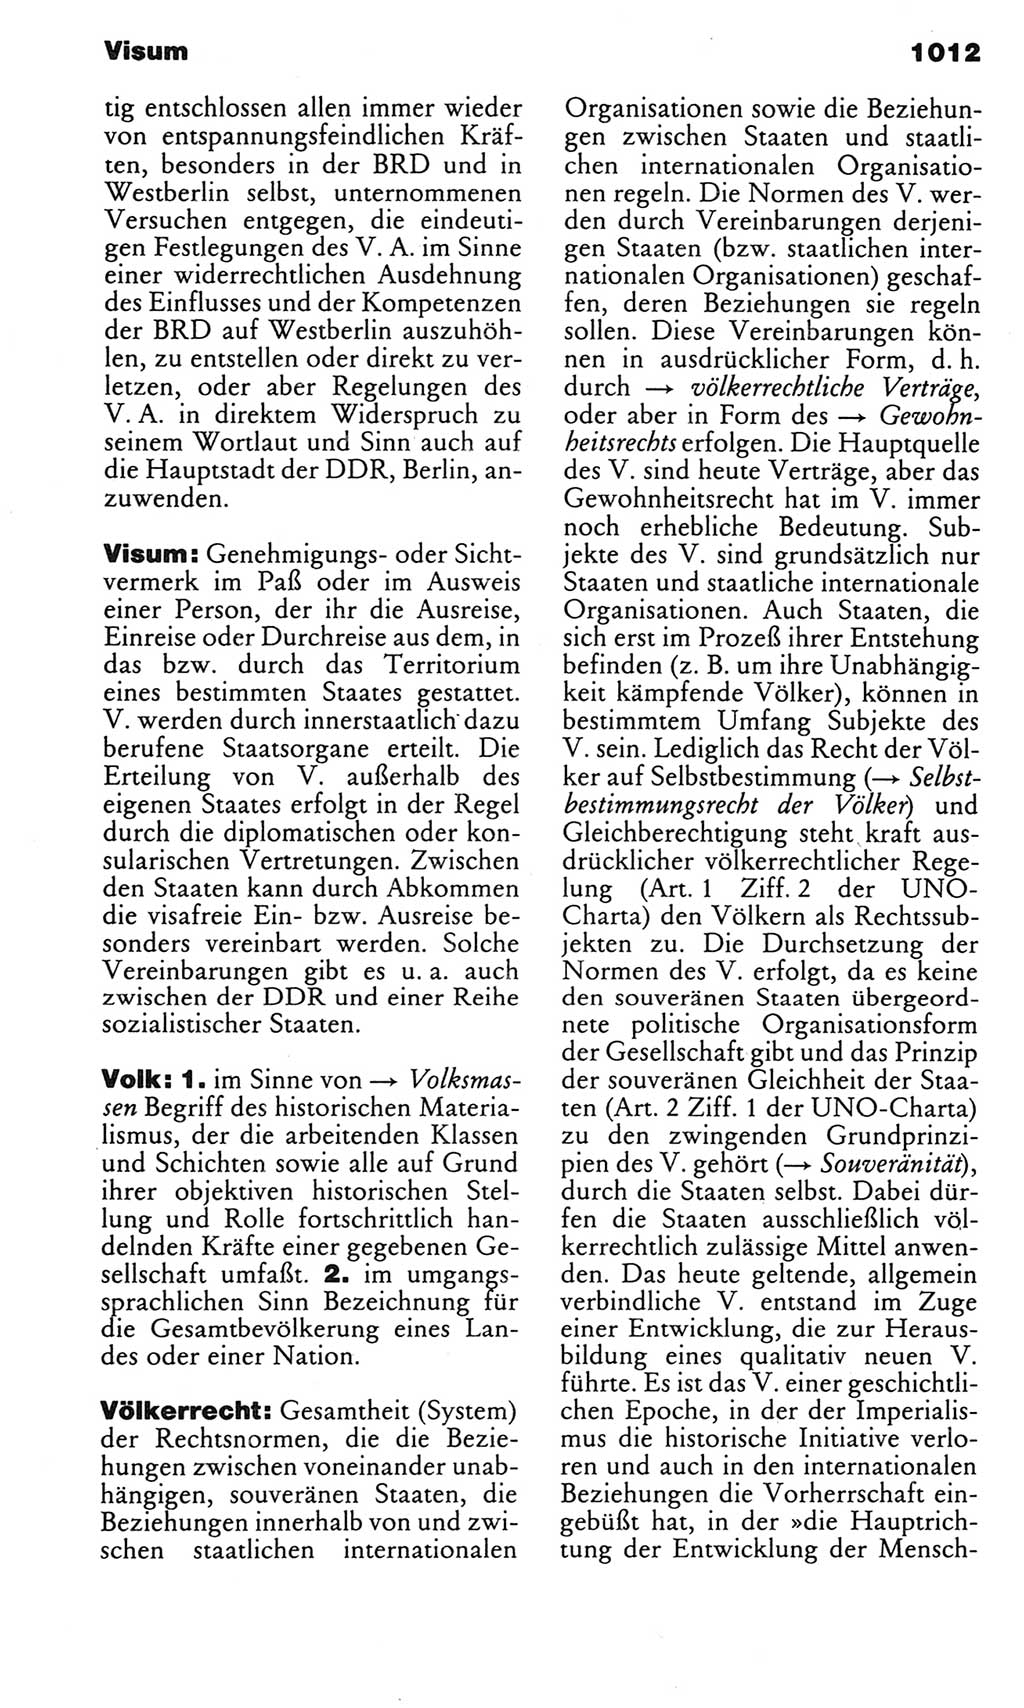 Kleines politisches Wörterbuch [Deutsche Demokratische Republik (DDR)] 1983, Seite 1012 (Kl. pol. Wb. DDR 1983, S. 1012)